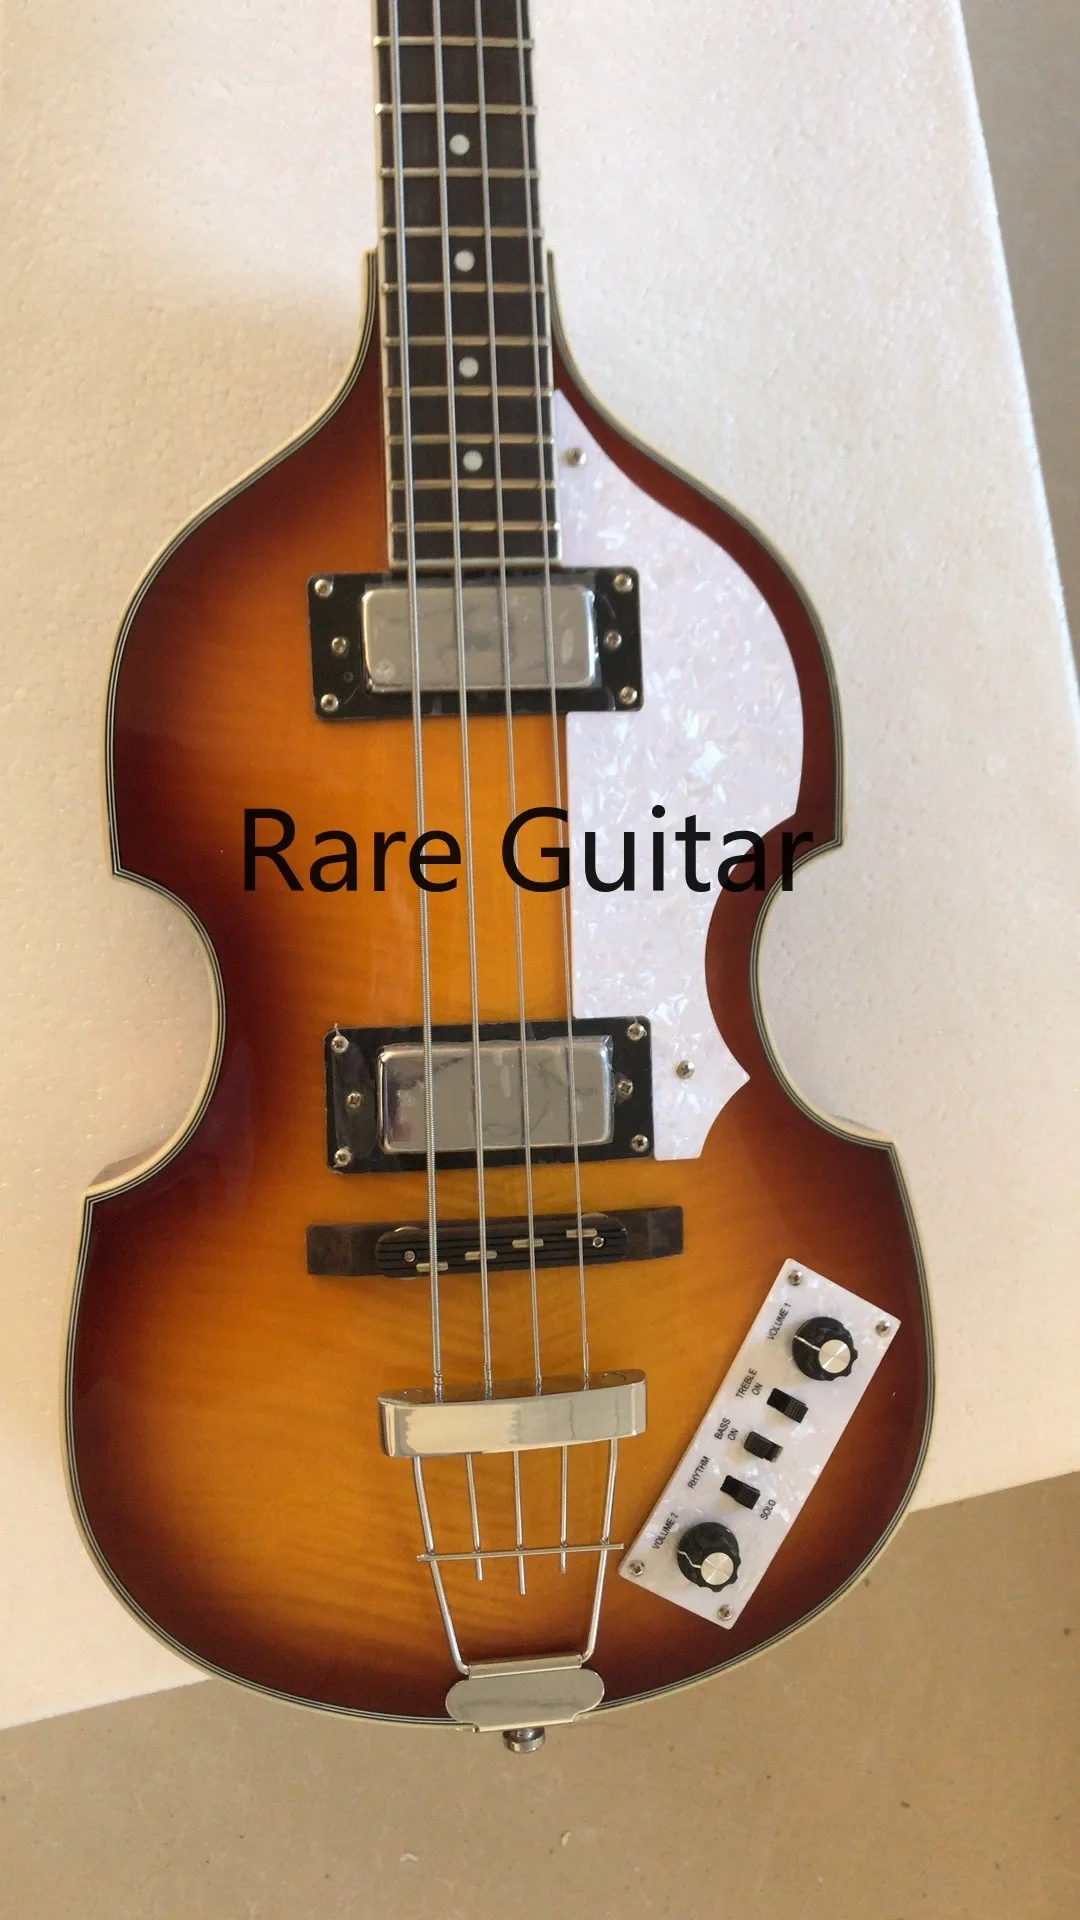 

Мкартни Хофнер H500/1-CT Современная скрипка Делюкс 4 струны гитара Табак Sunburst электрический бас пламя кленовый верх и спина 2